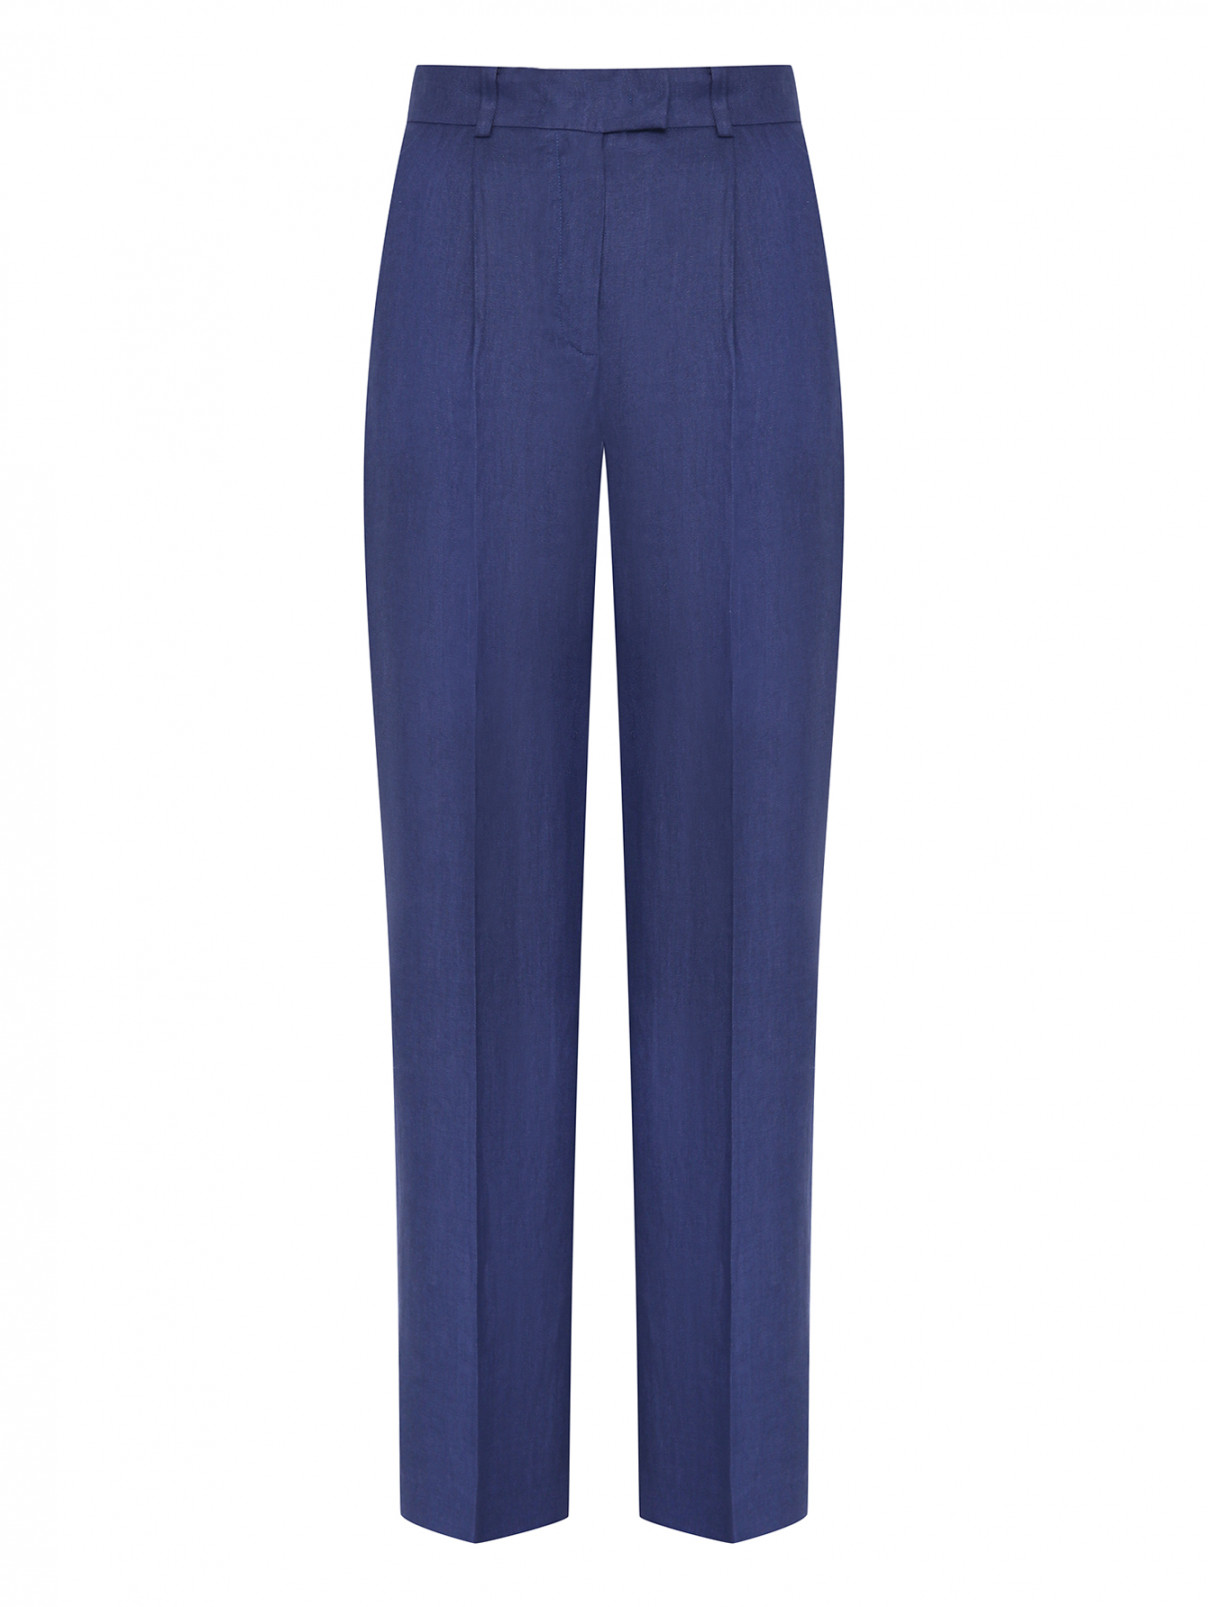 Однотонные брюки изо льна Luisa Spagnoli  –  Общий вид  – Цвет:  Синий